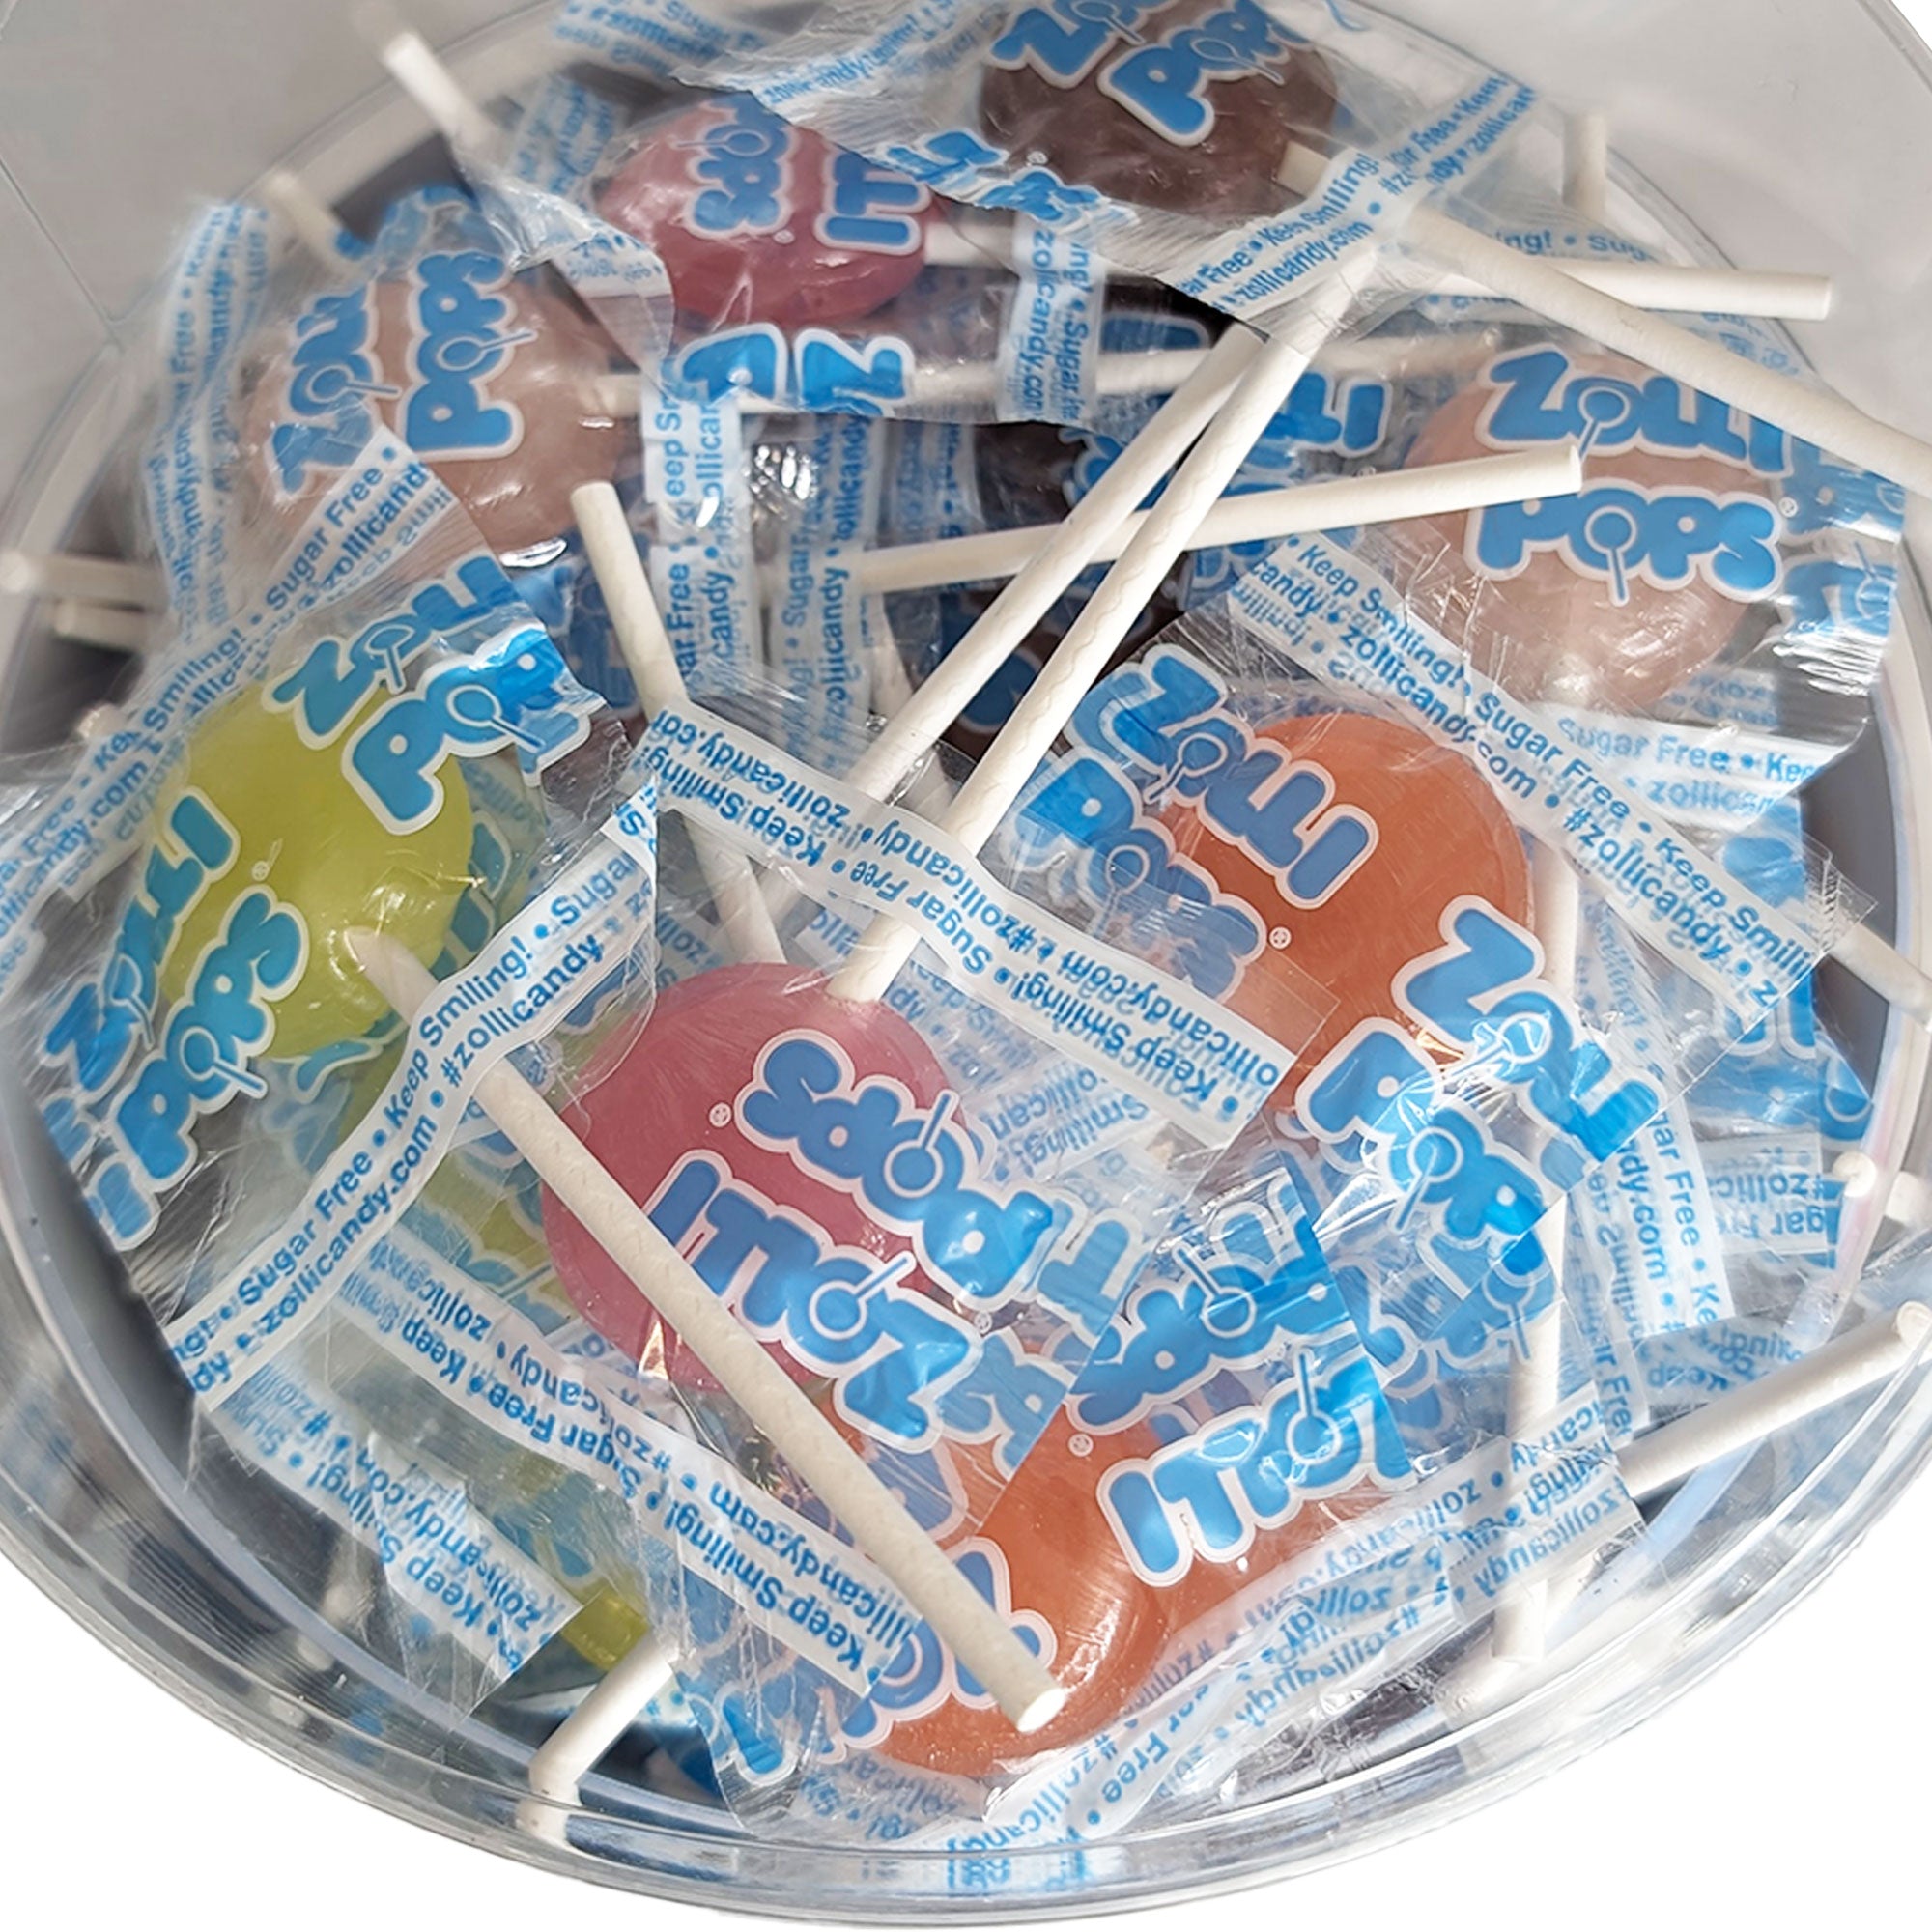 Zollipops Original 